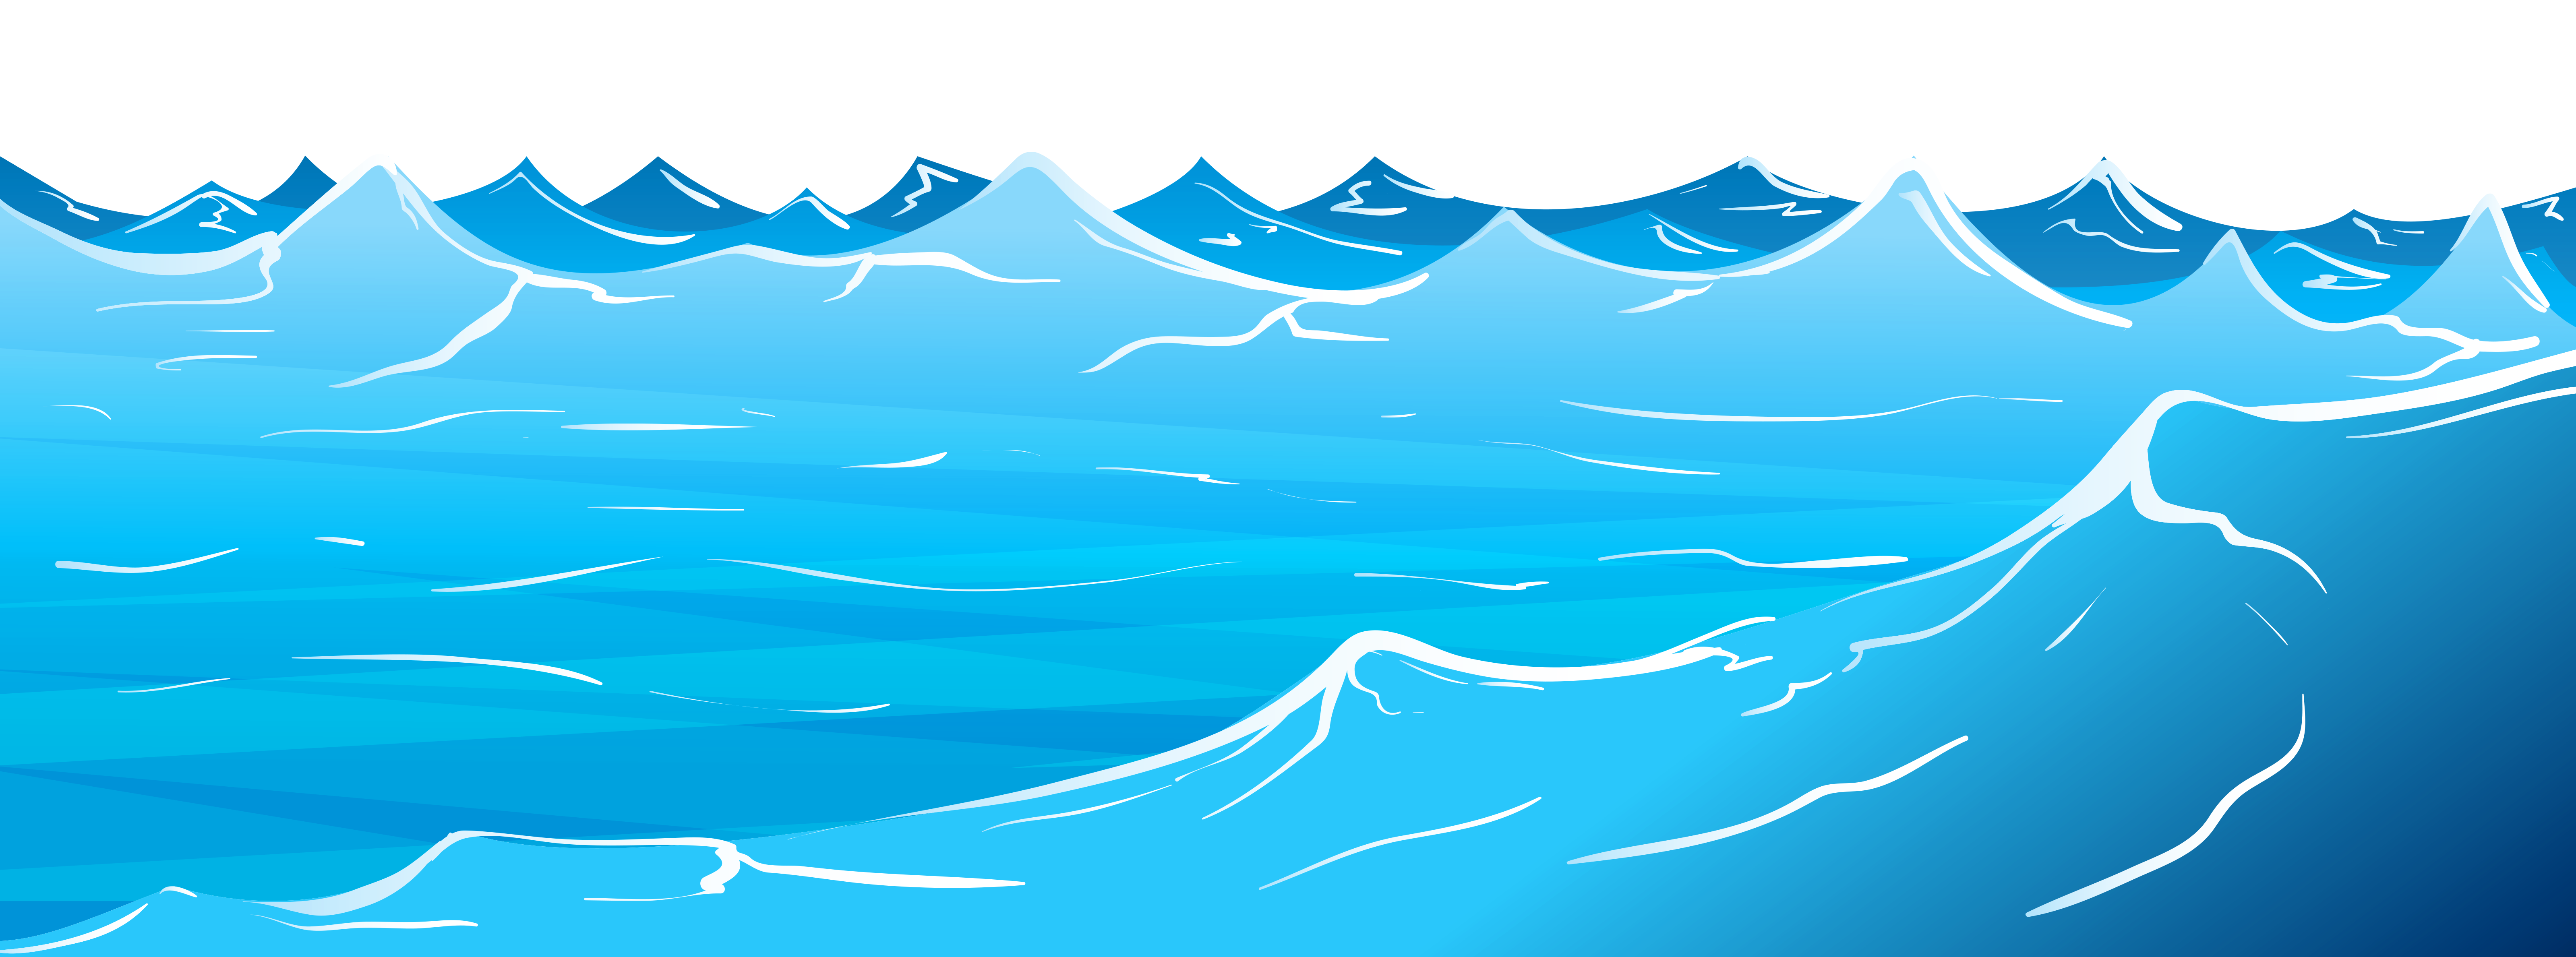 waves clipart vague